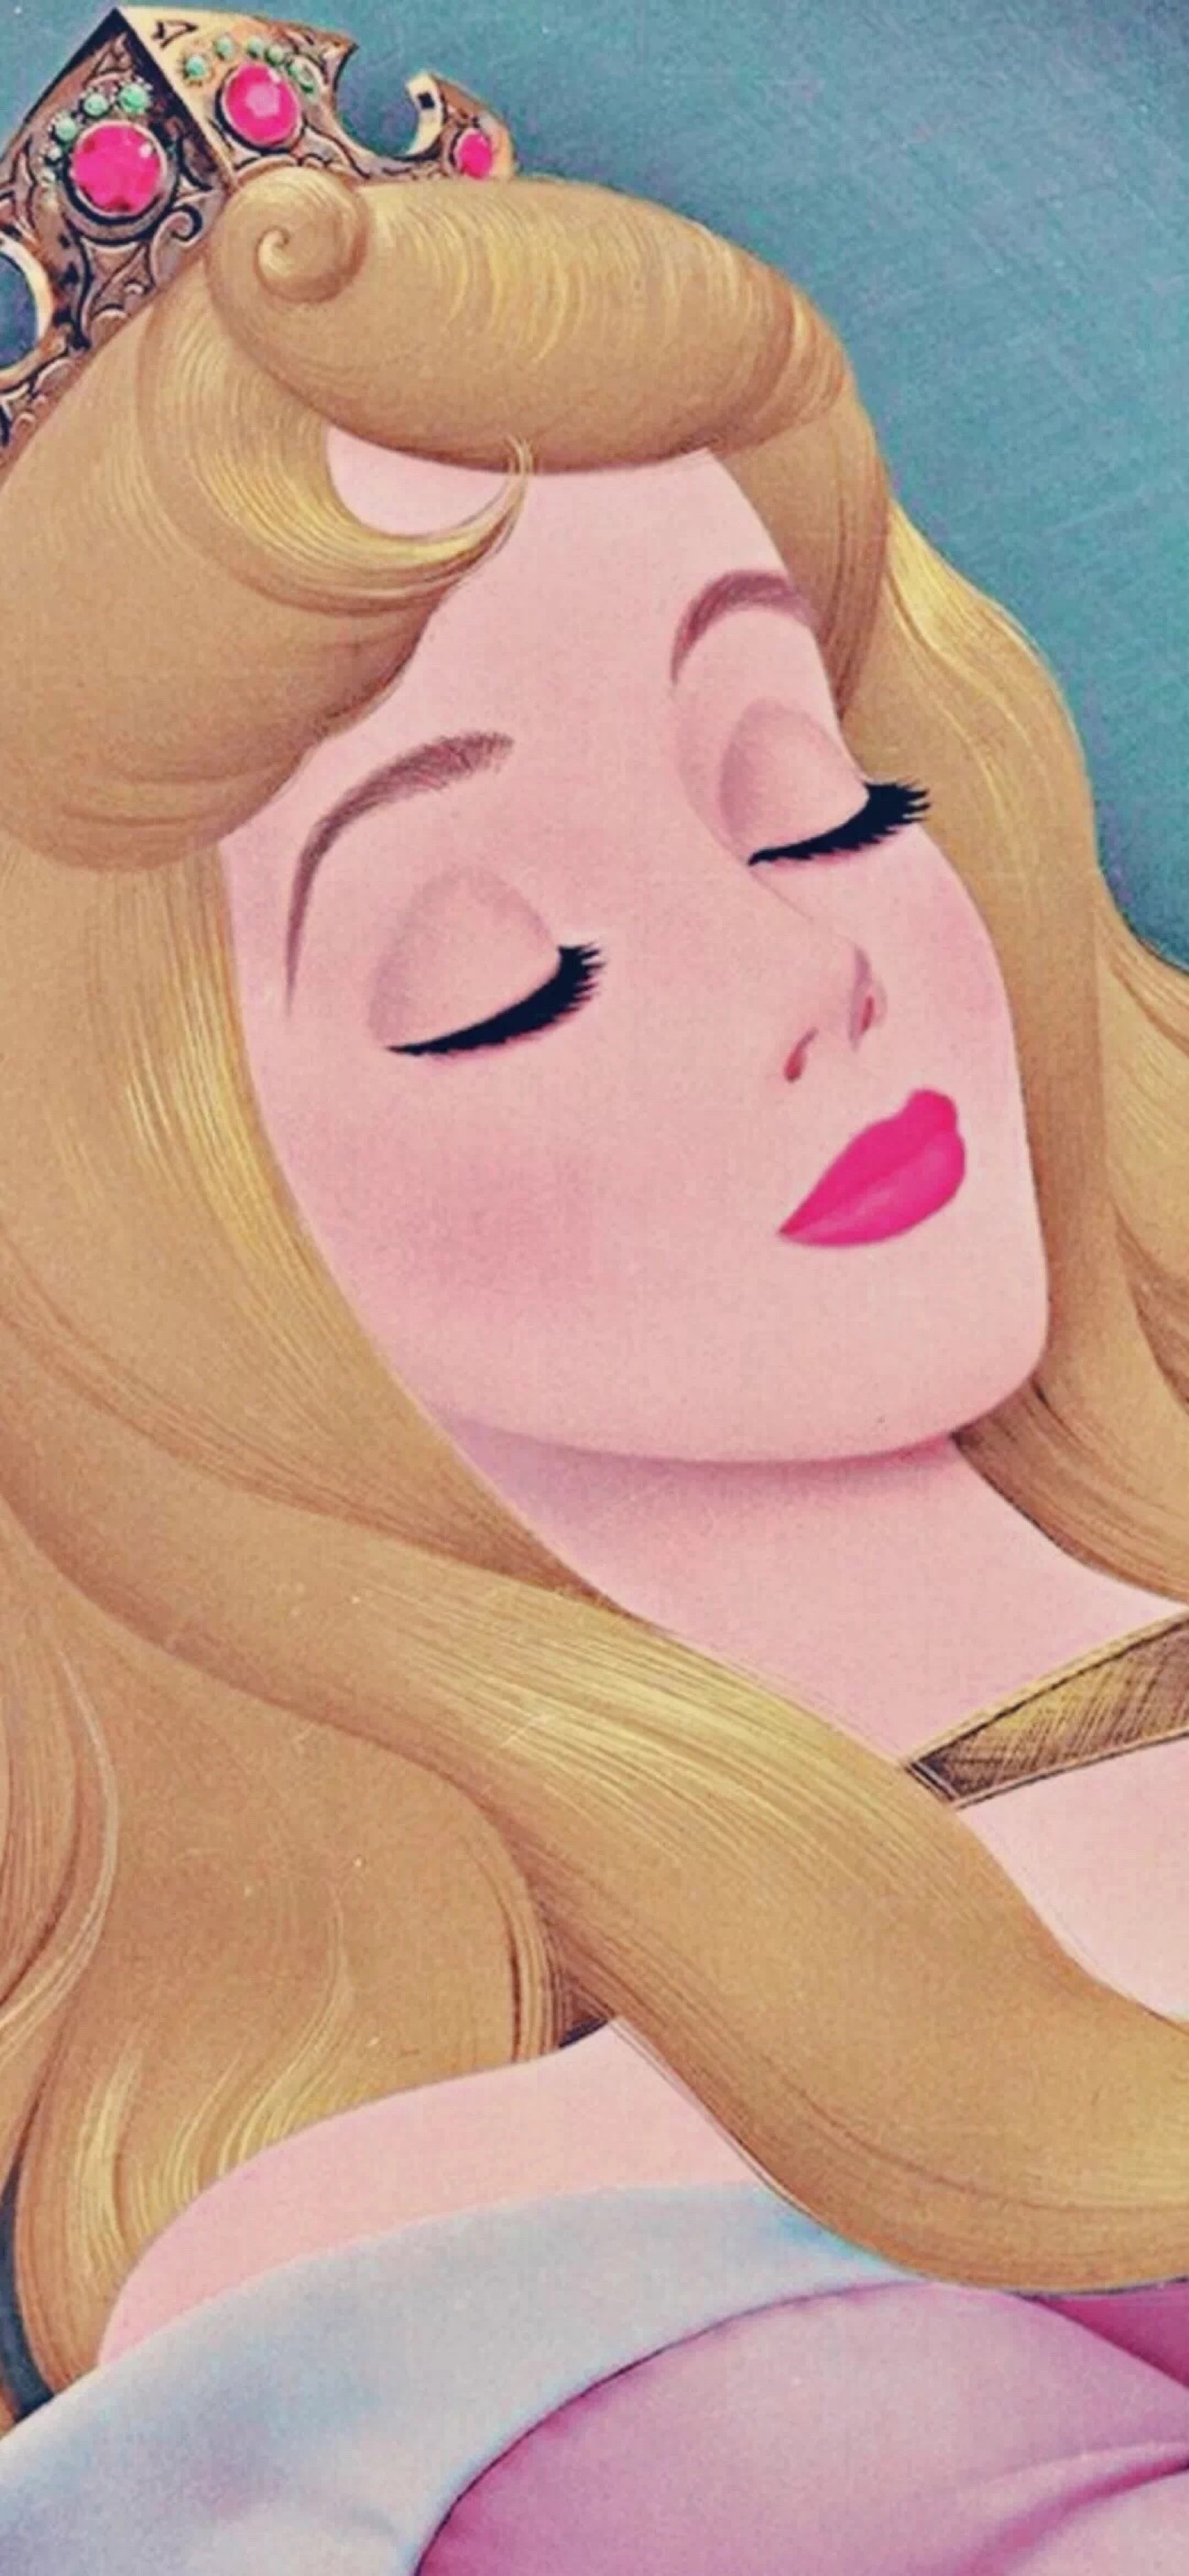 迪士尼傲娇小公主屏保图片